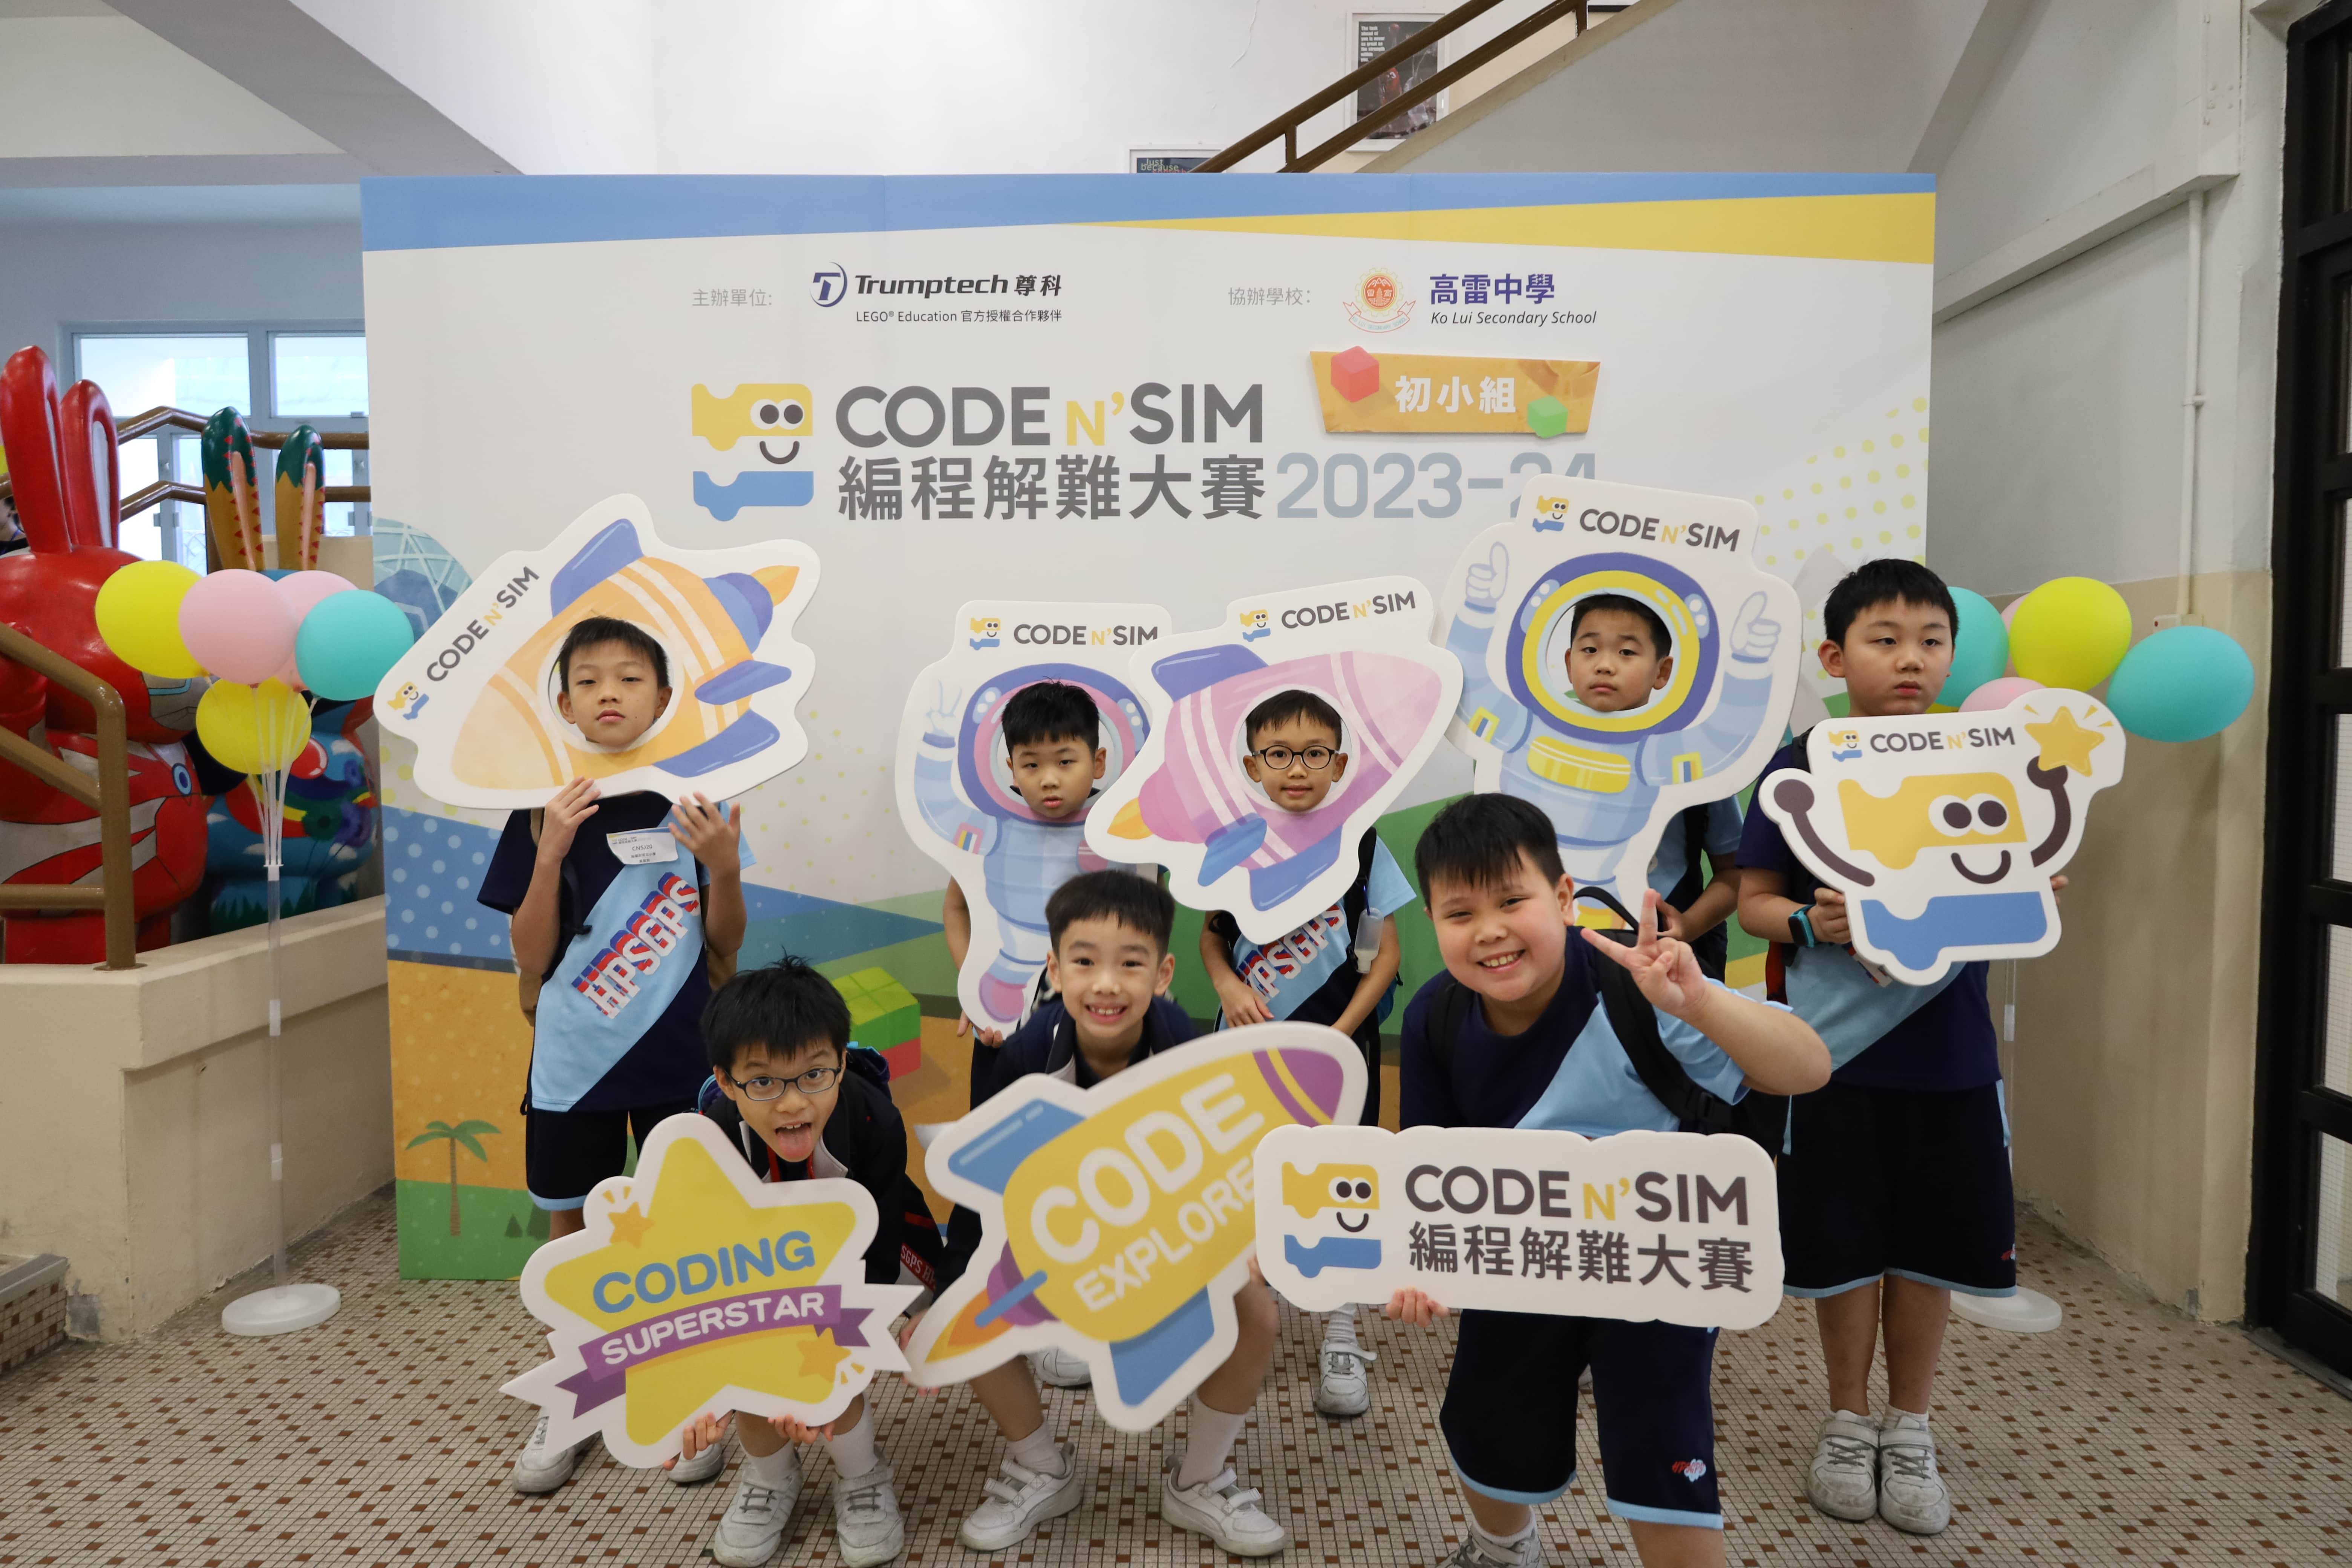 CodeN'Sim 編程解難大賽 2023-2024 (初小組)